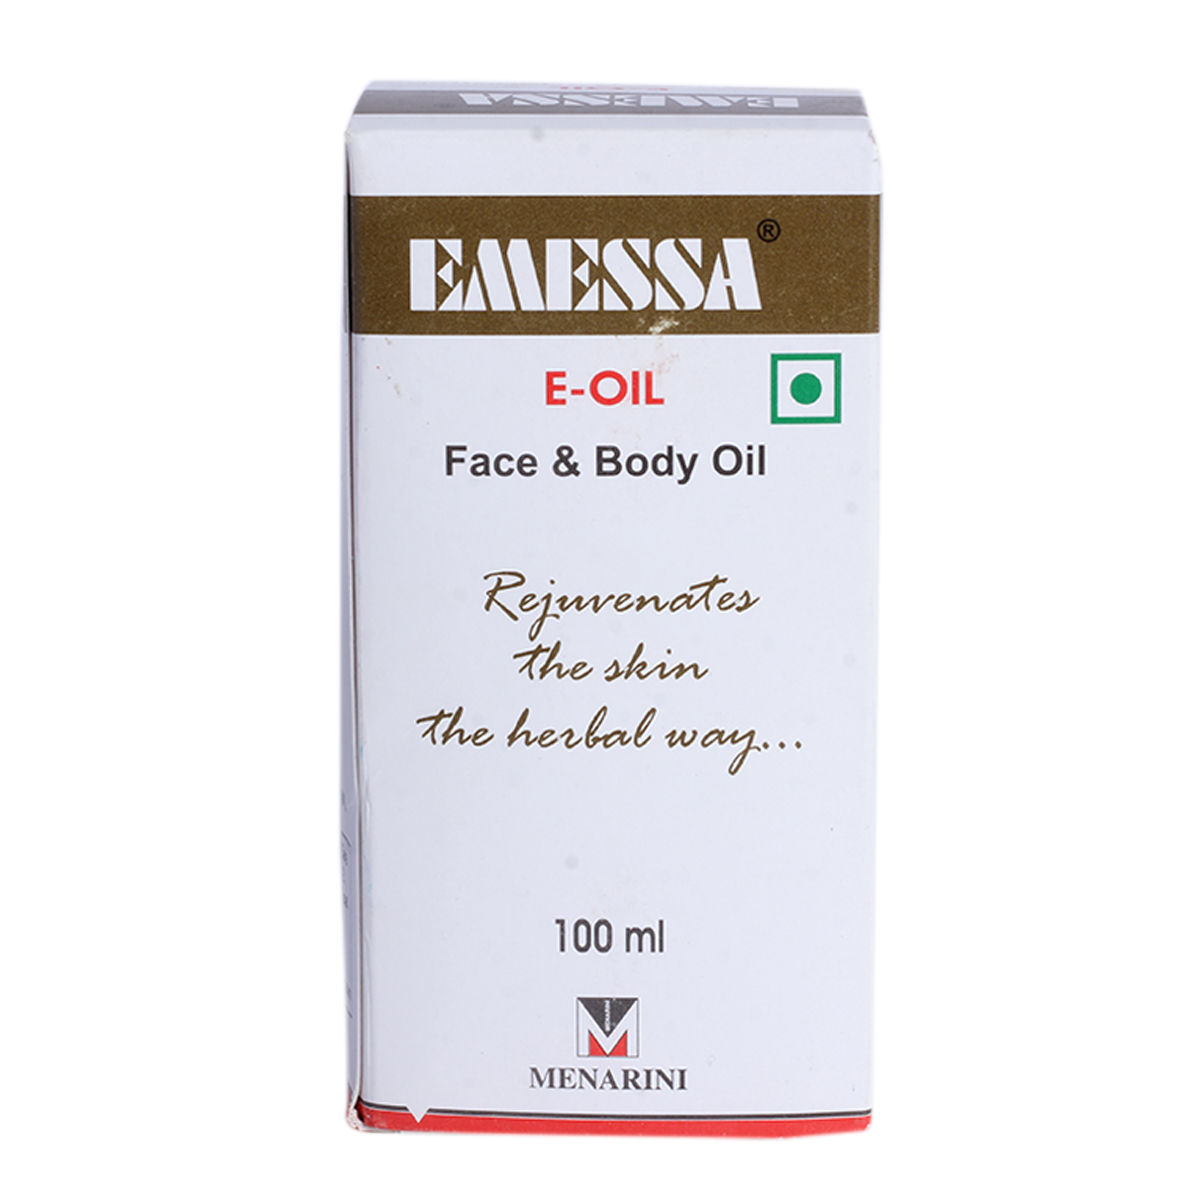 Buy Emessa-E Oil, 100 ml Online